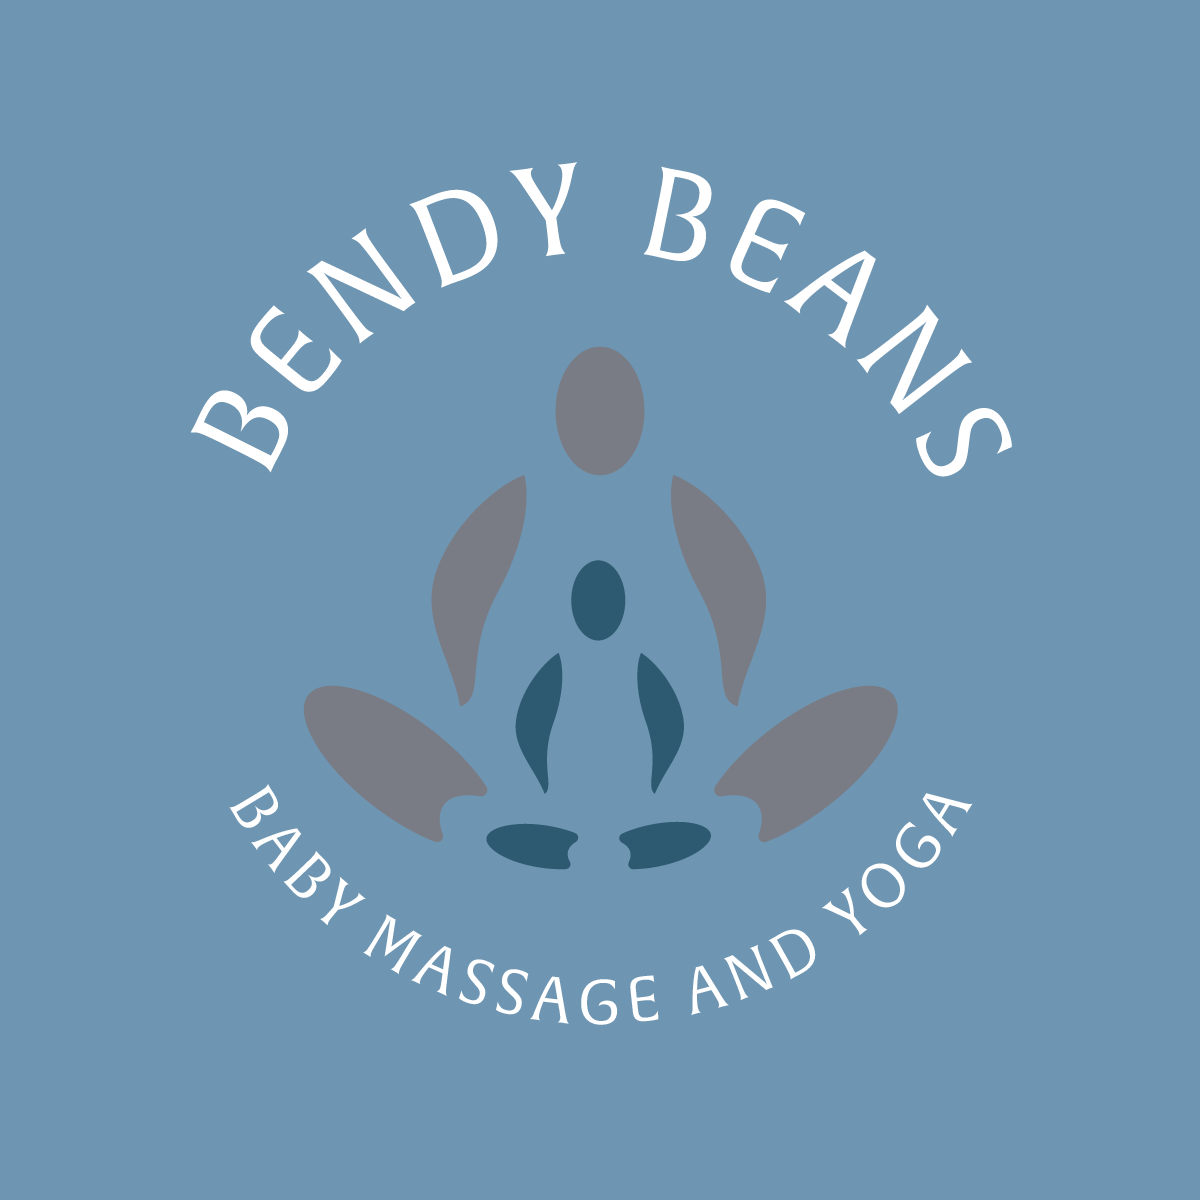 EXHIBITOR: Bendy Beans